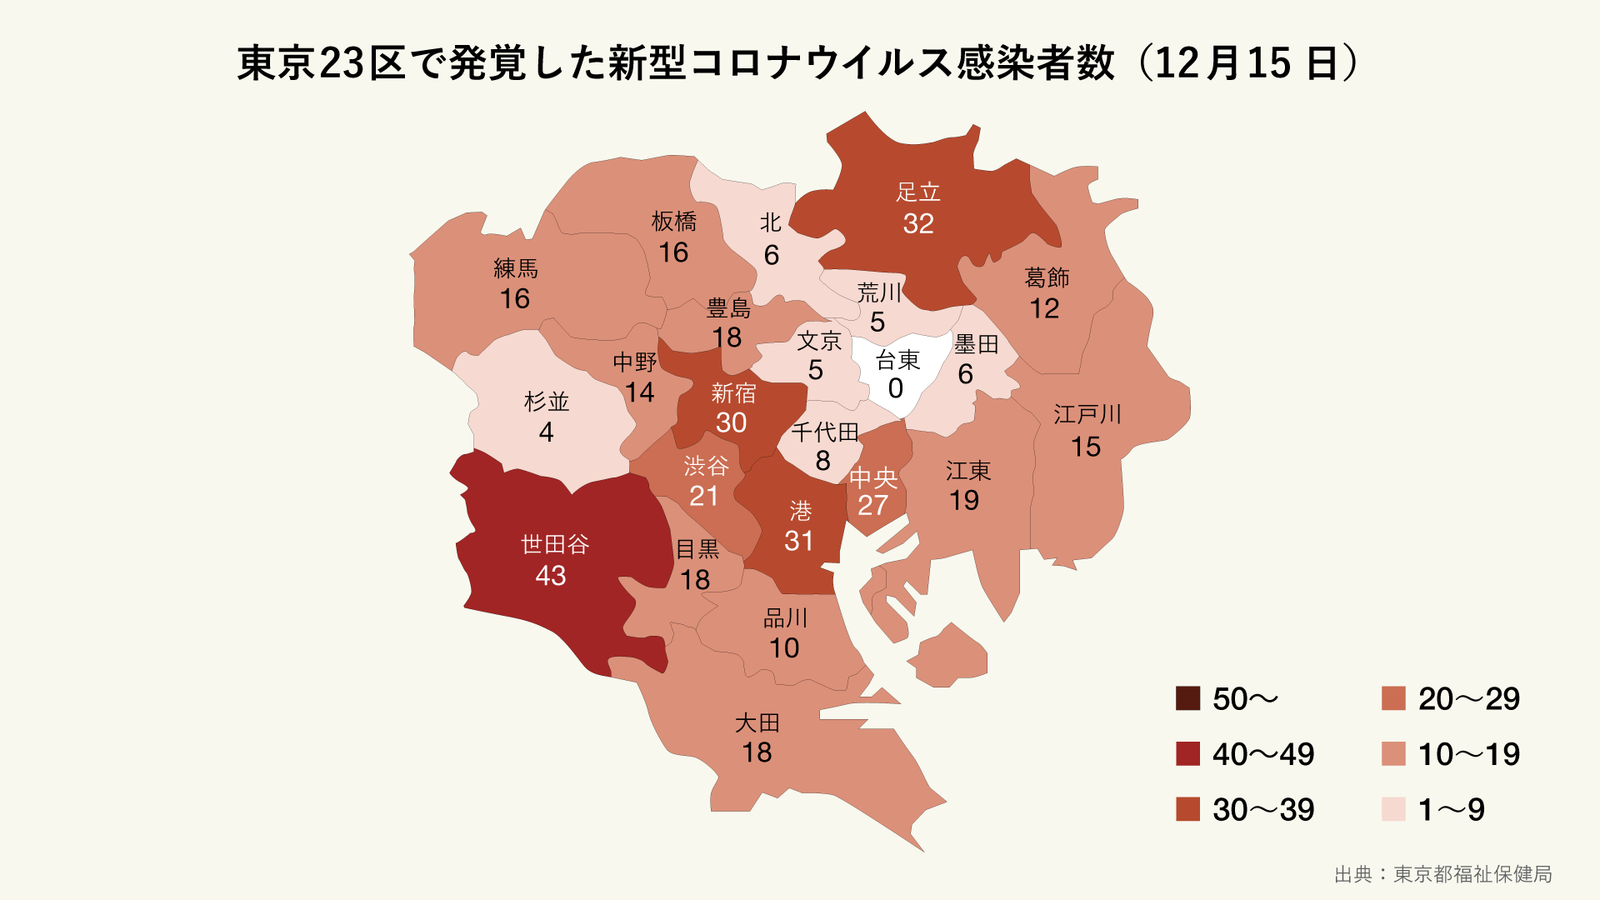 東京23区の今日発覚した新型コロナウイルス感染者数のマップ ...